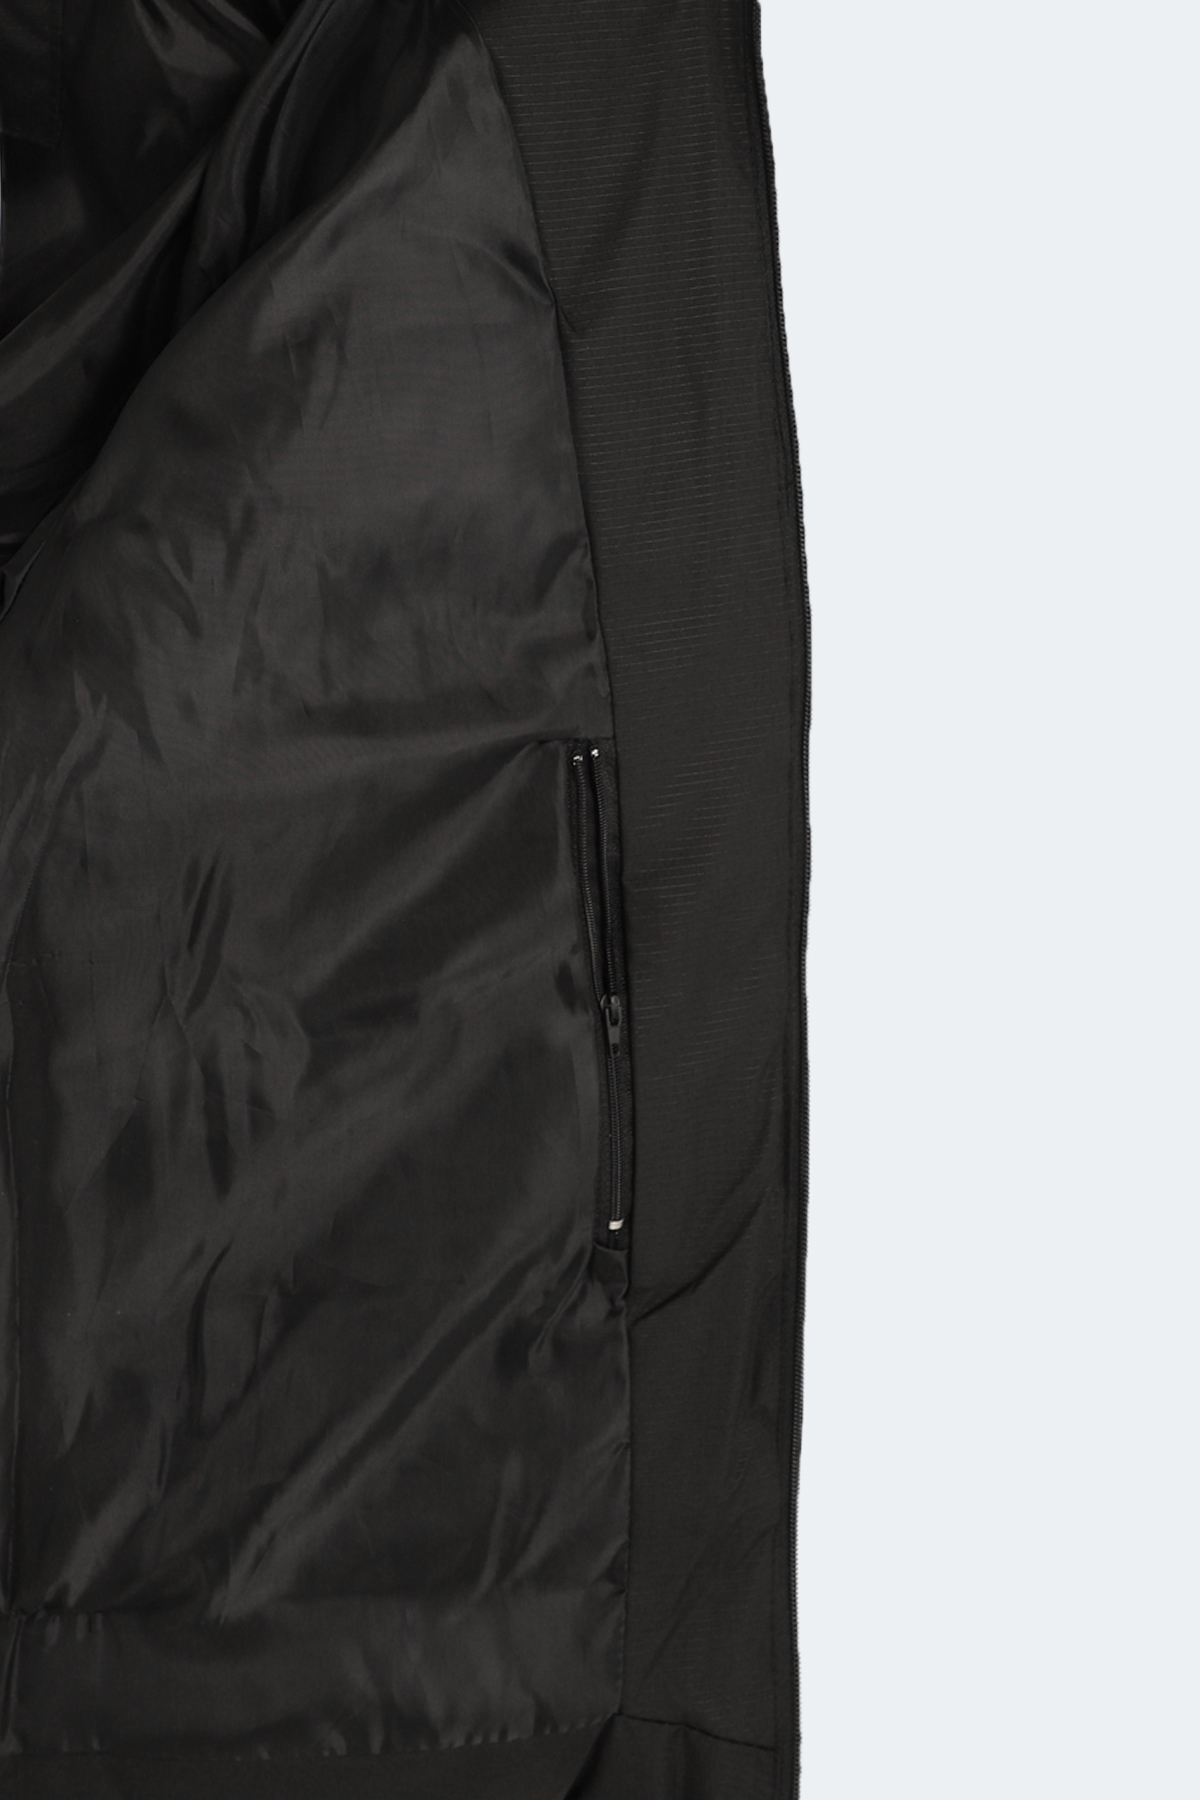 Slazenger کت مردانه سایز پلاس HAIFA مشکی